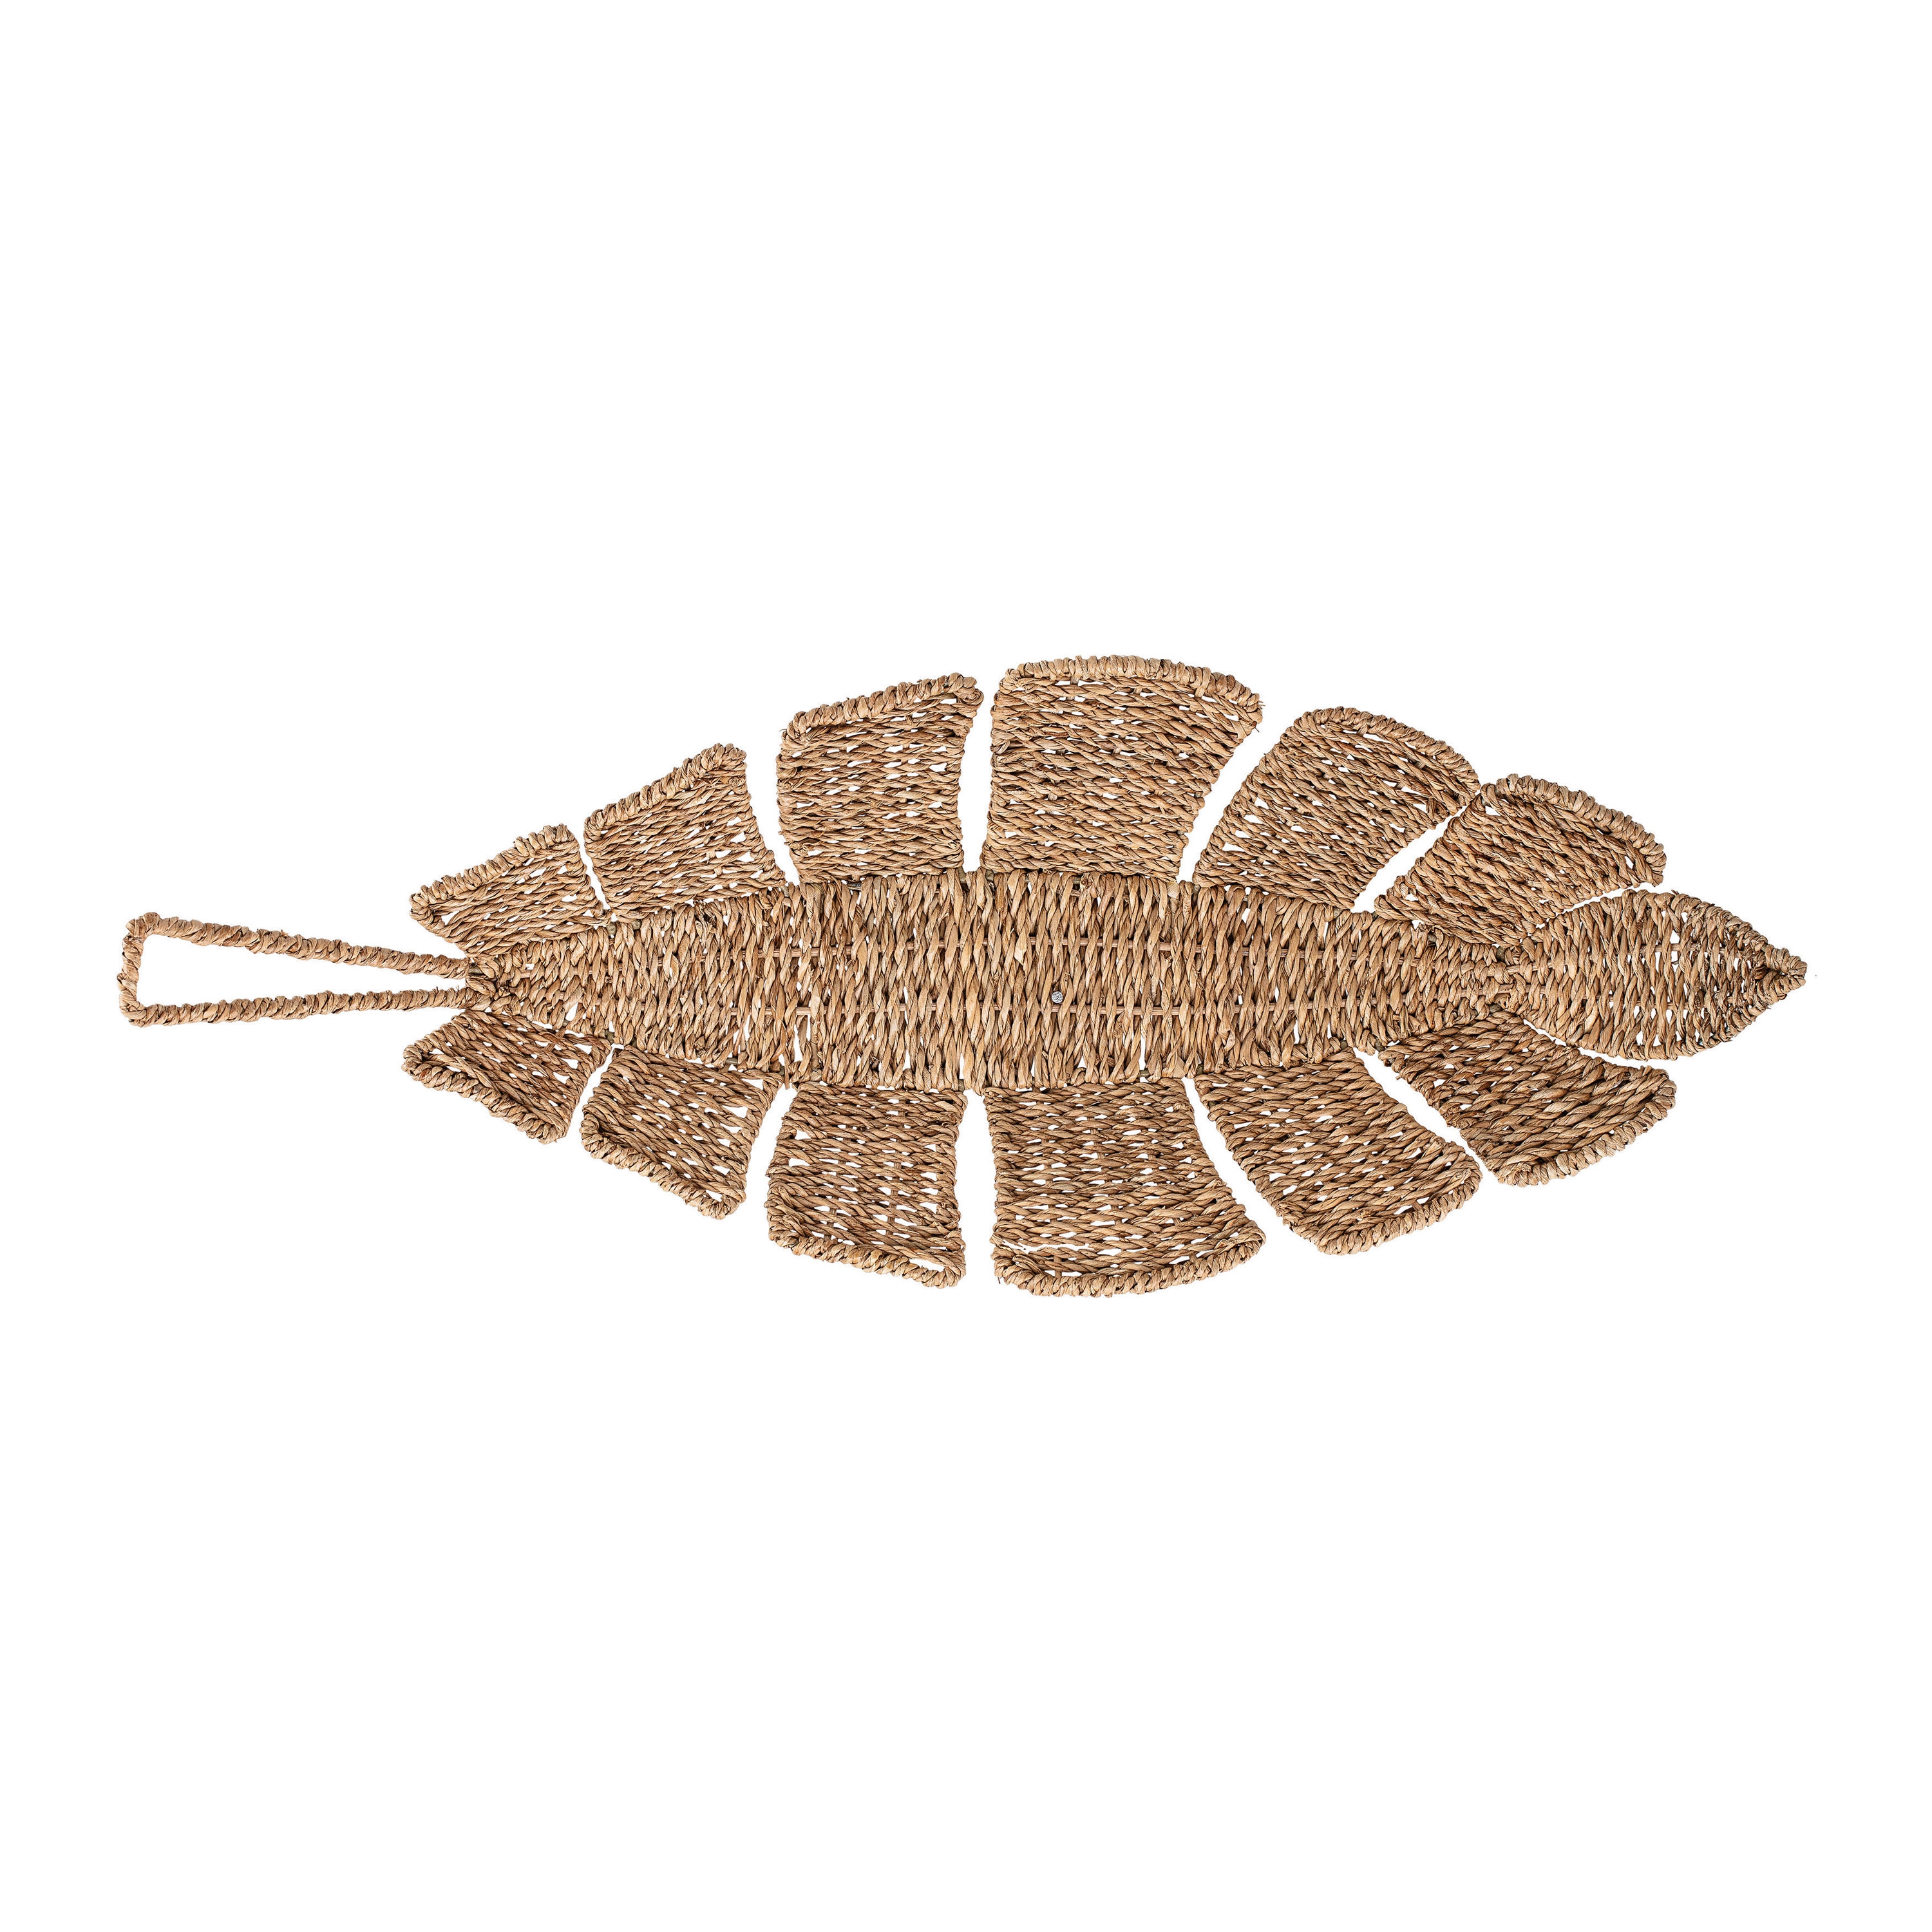 Bangkuan Rope Leaf Basket - Image 0